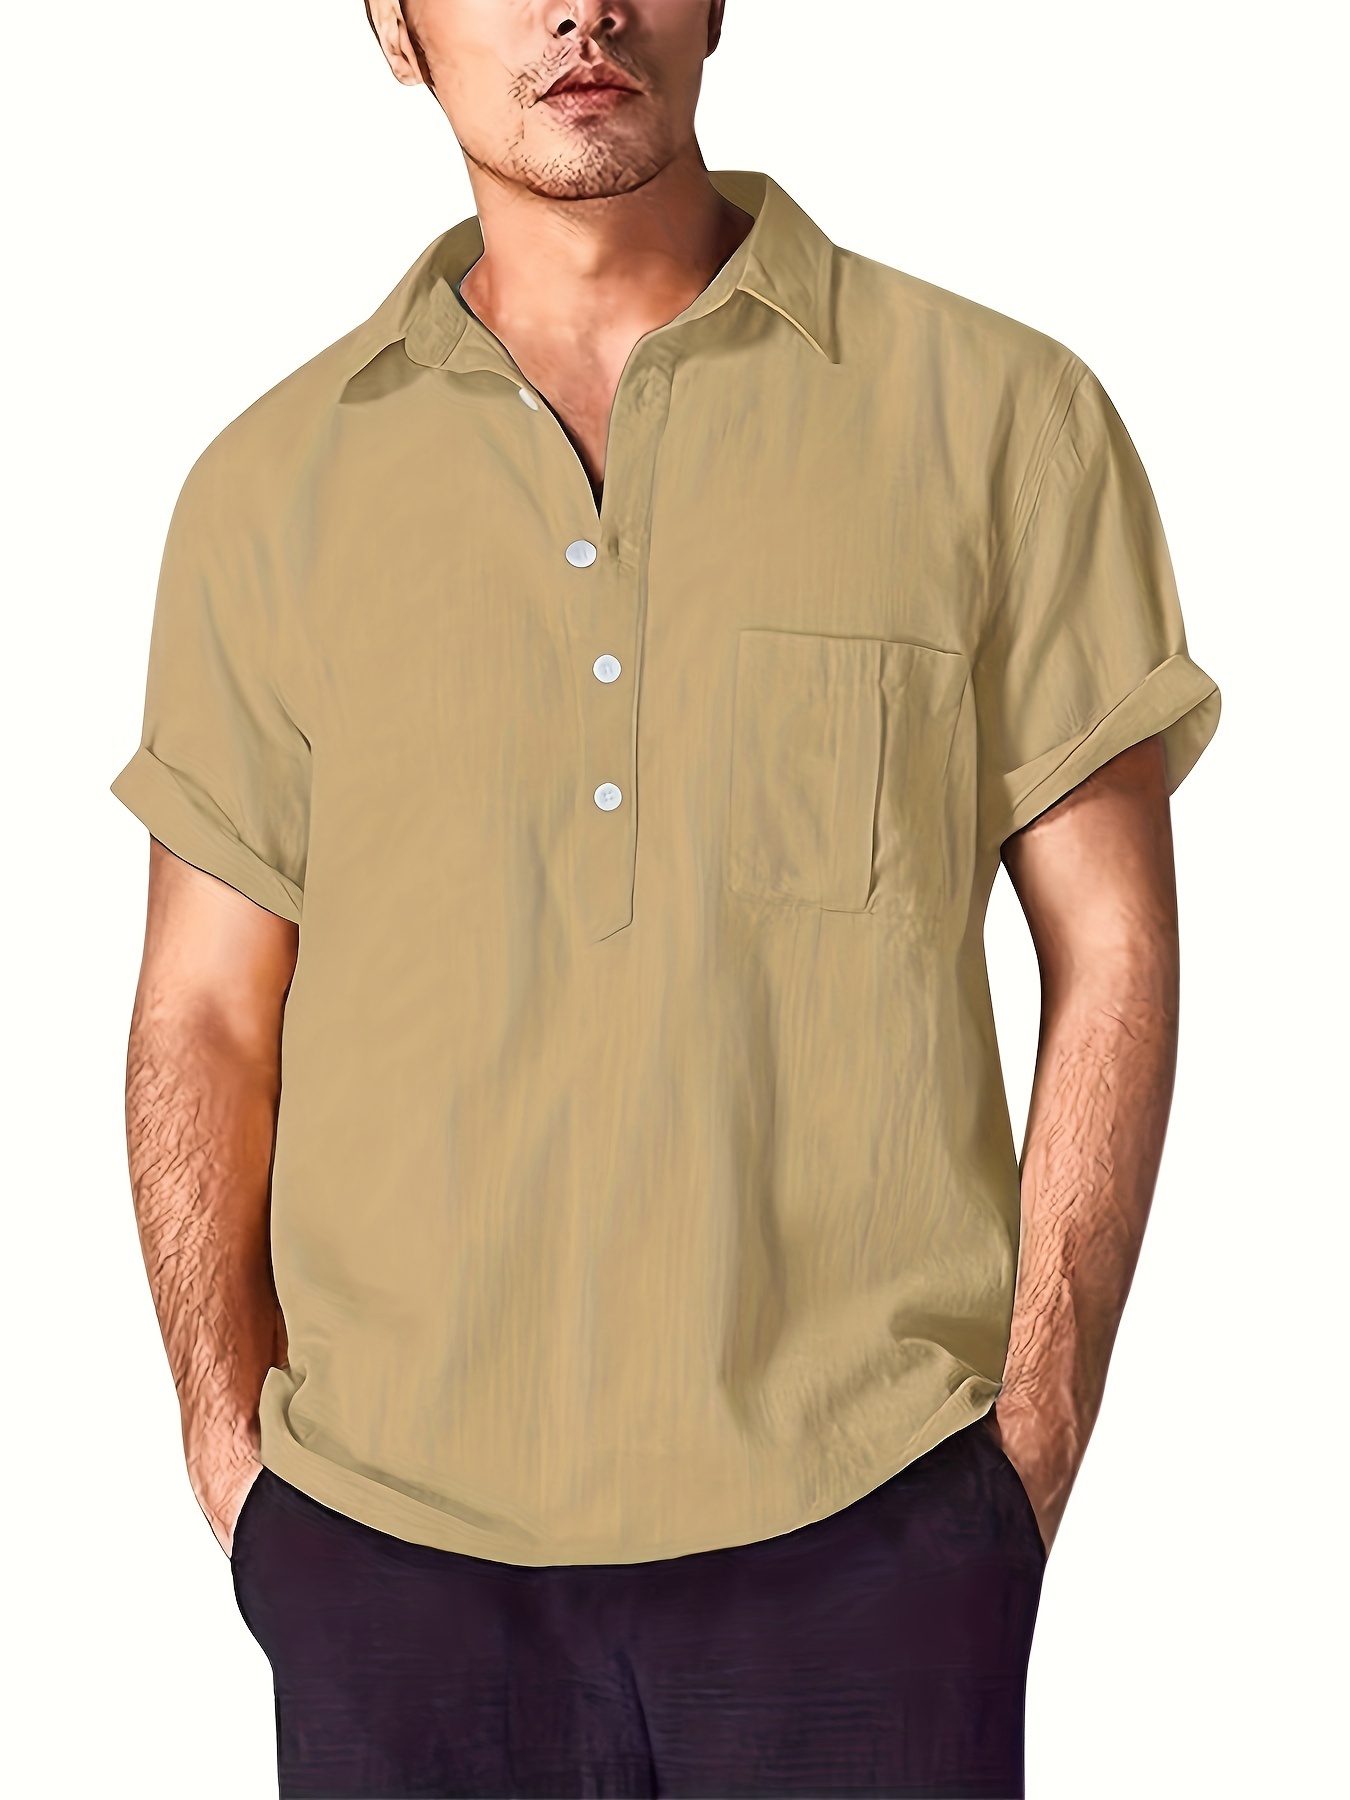 Men's Tee Shirt Short Sleeve Tee Tops Summer Casual Golf Sports T Shirt  Blouse H